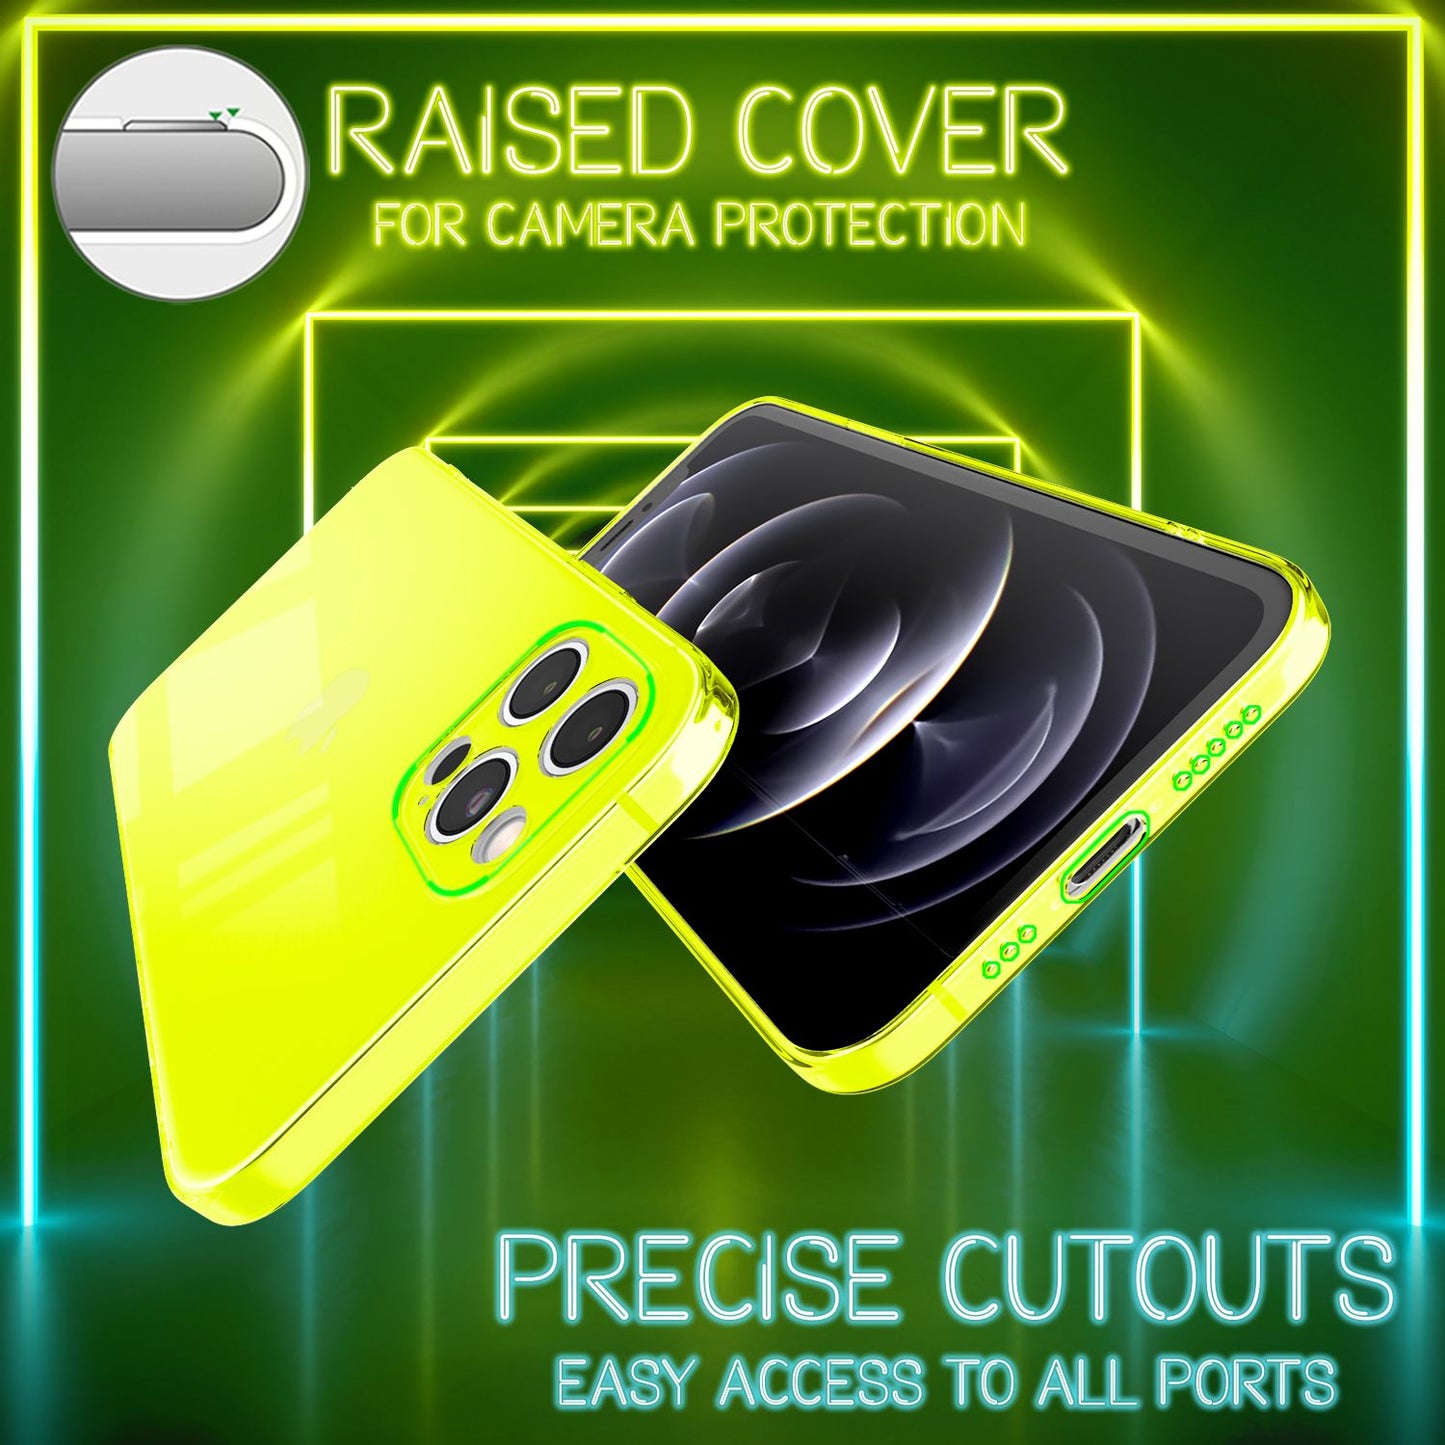 NALIA Klare Neon Handy Hülle für iPhone 13 Pro, Bunt Durchsichtig Cover Case